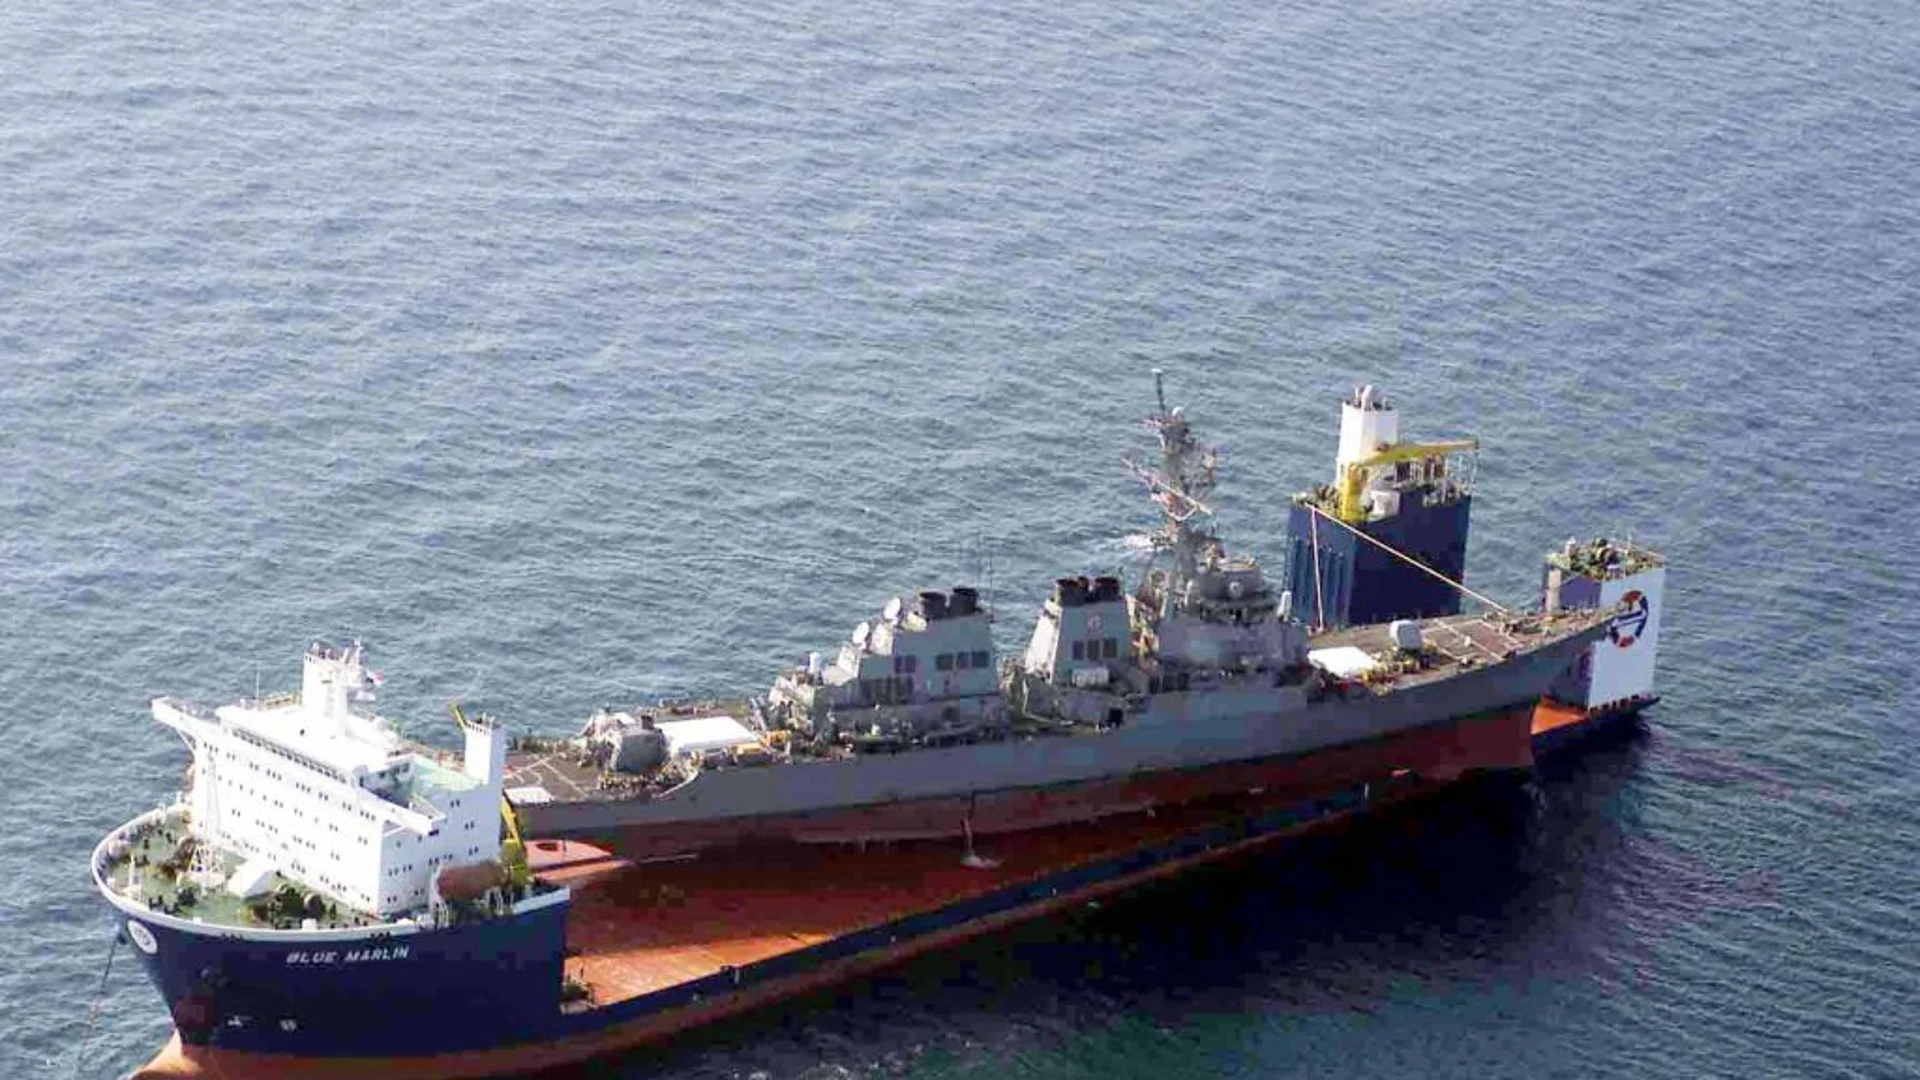 Поредна атака? Съмнителни лодки преследвали британски товарен кораб край Йемен